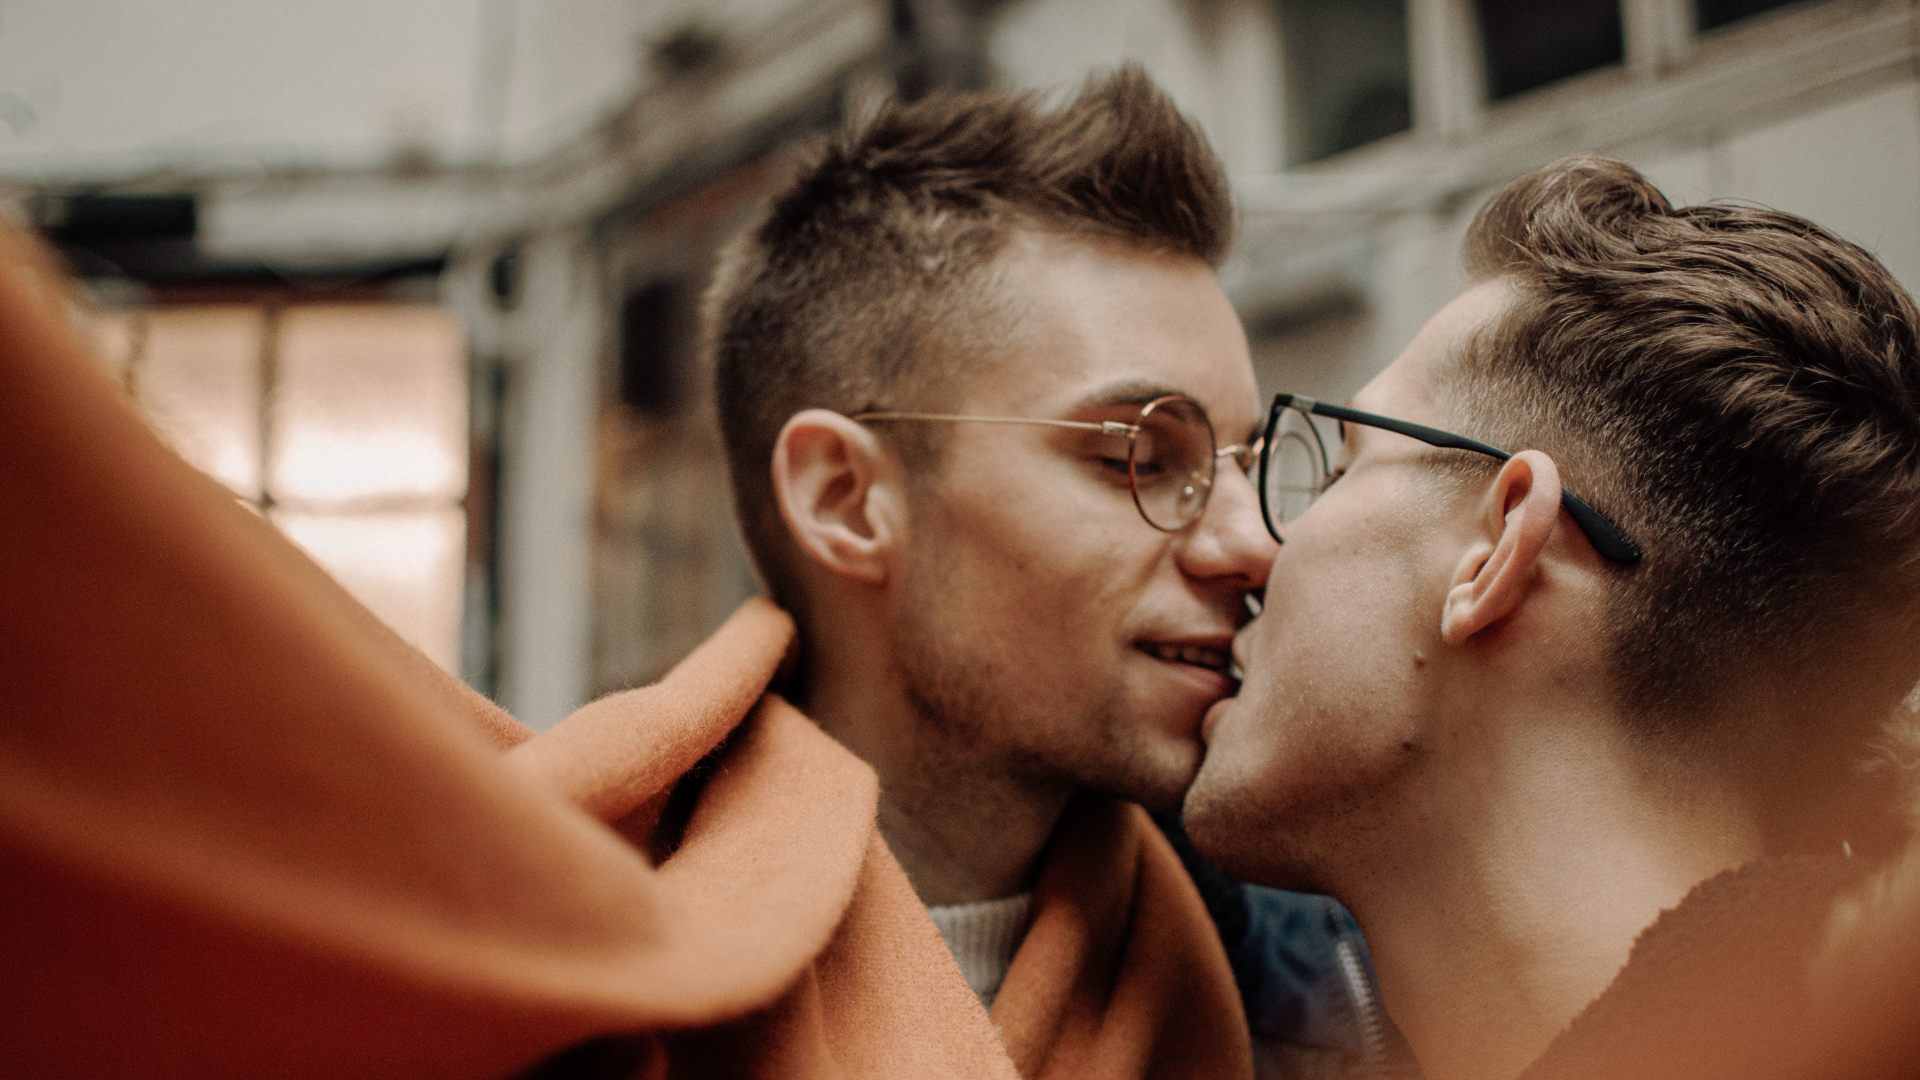 Masajistas, planes y ligues: llega una nueva 'app' gay